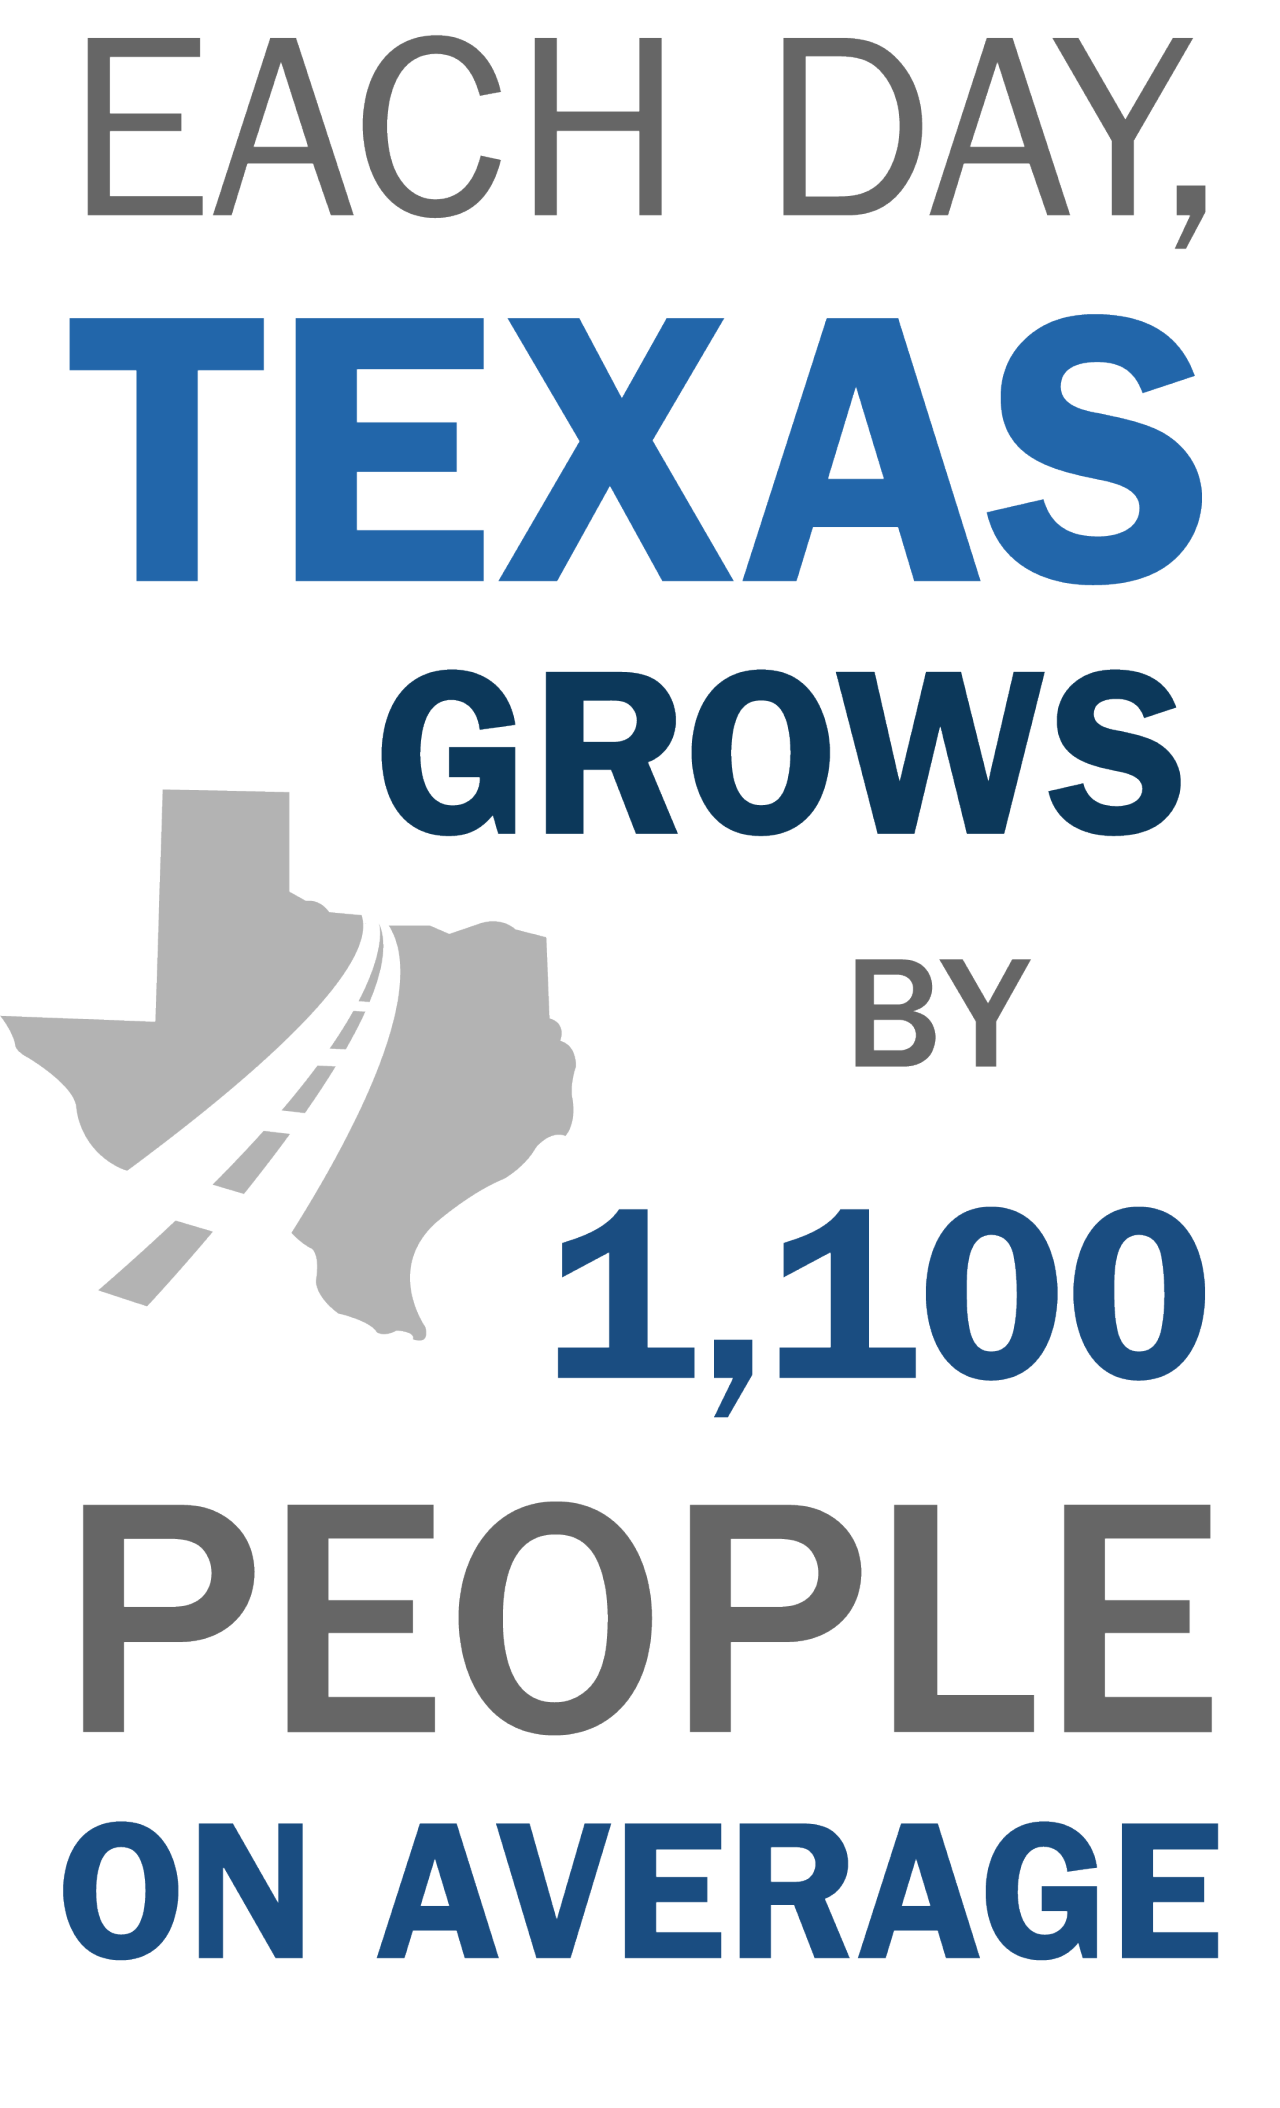 Cada día Texas crece en 1100 personas en promedio